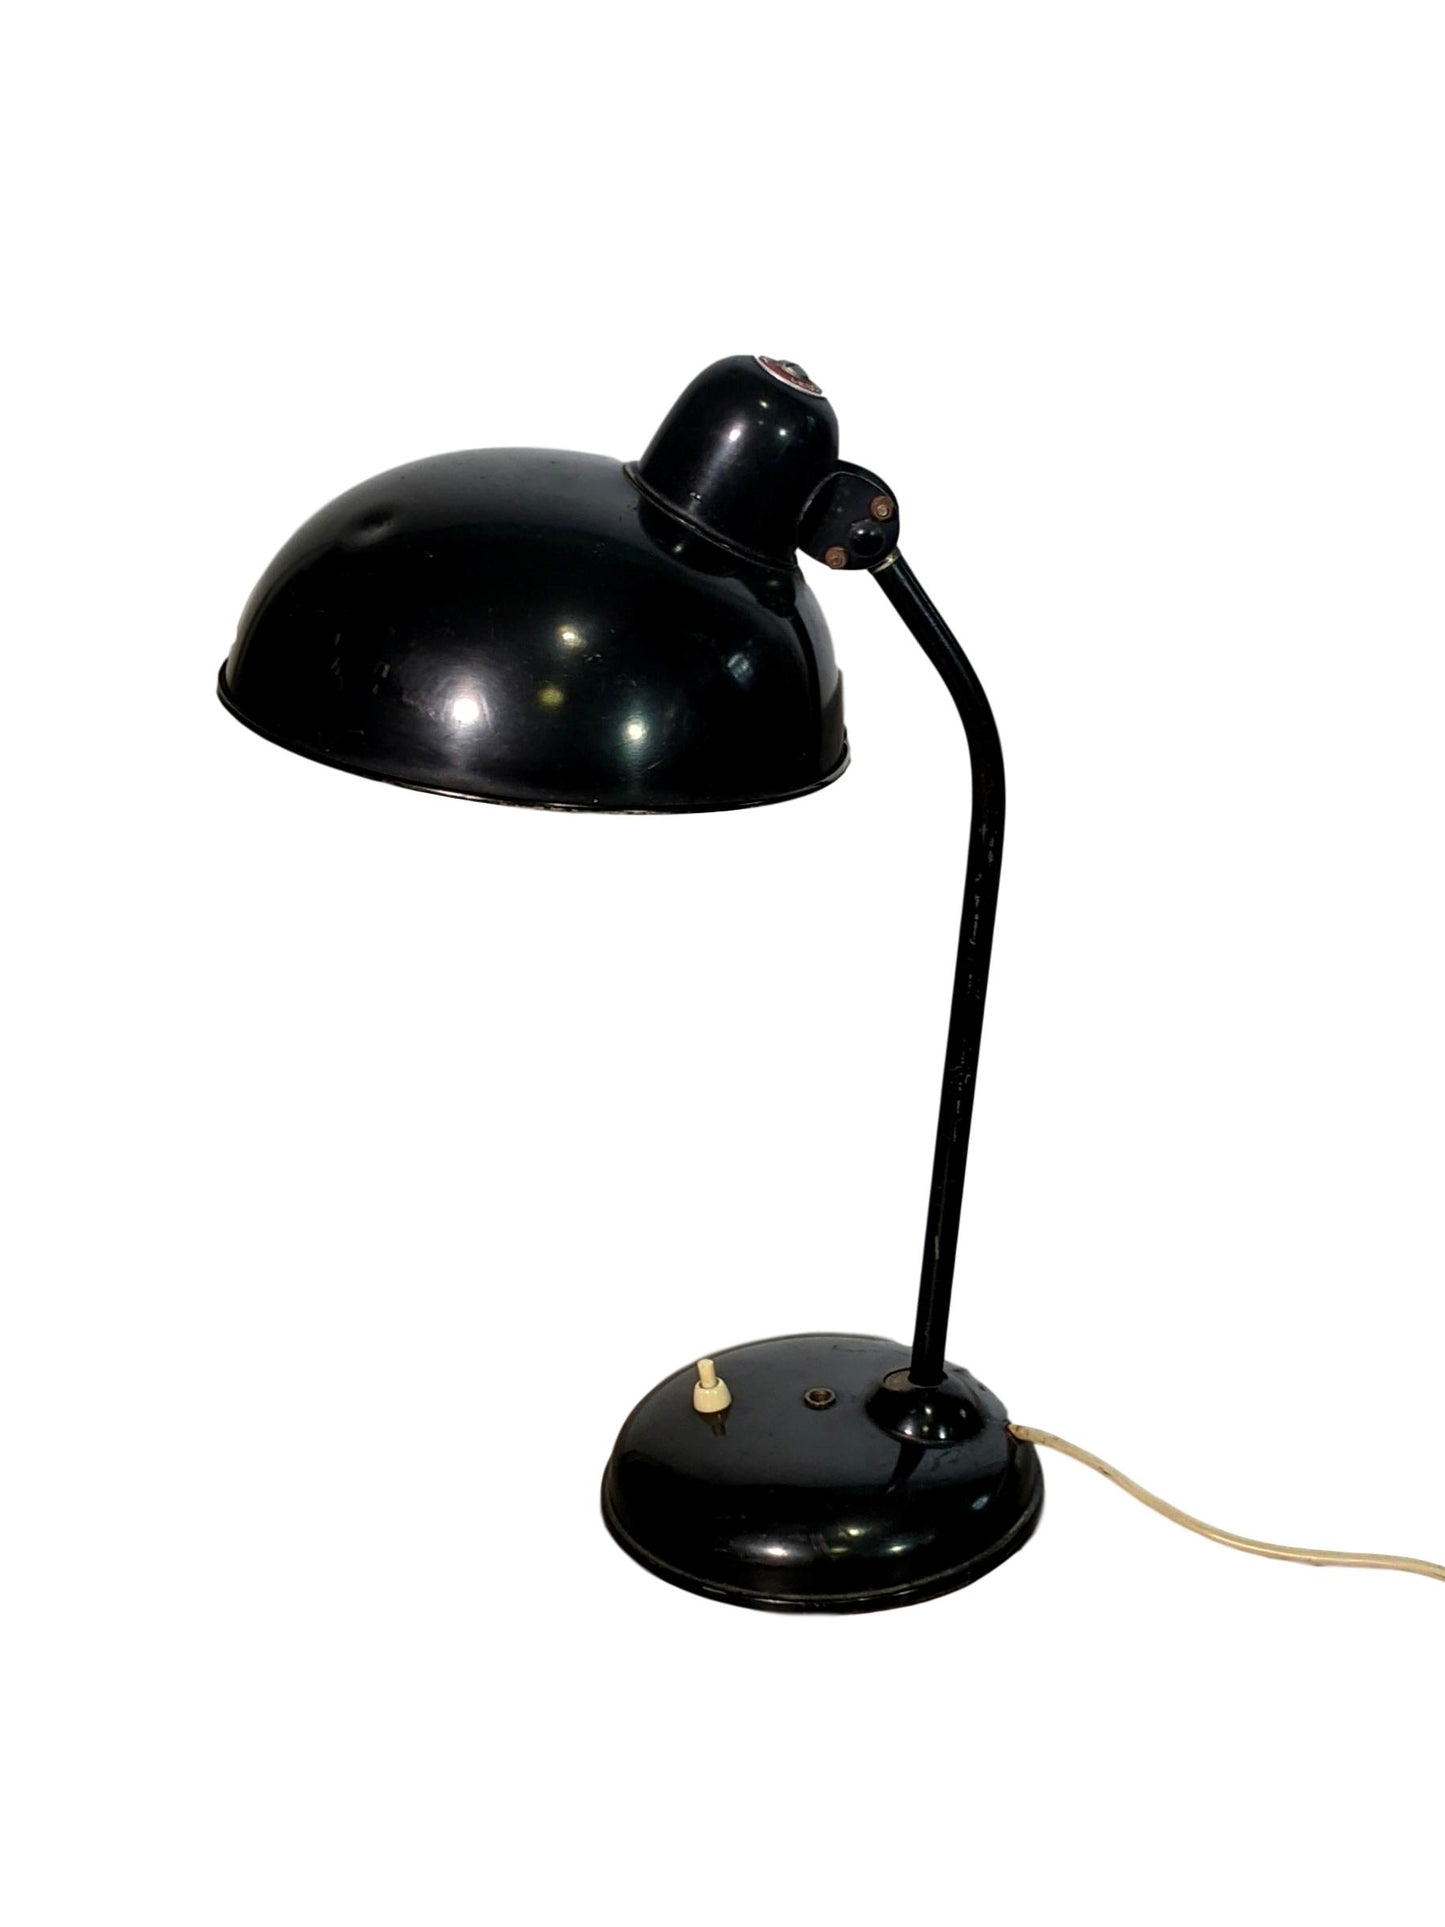 1950s Bauhaus Desk Lamp by Christian Dell for Helo Leuchten